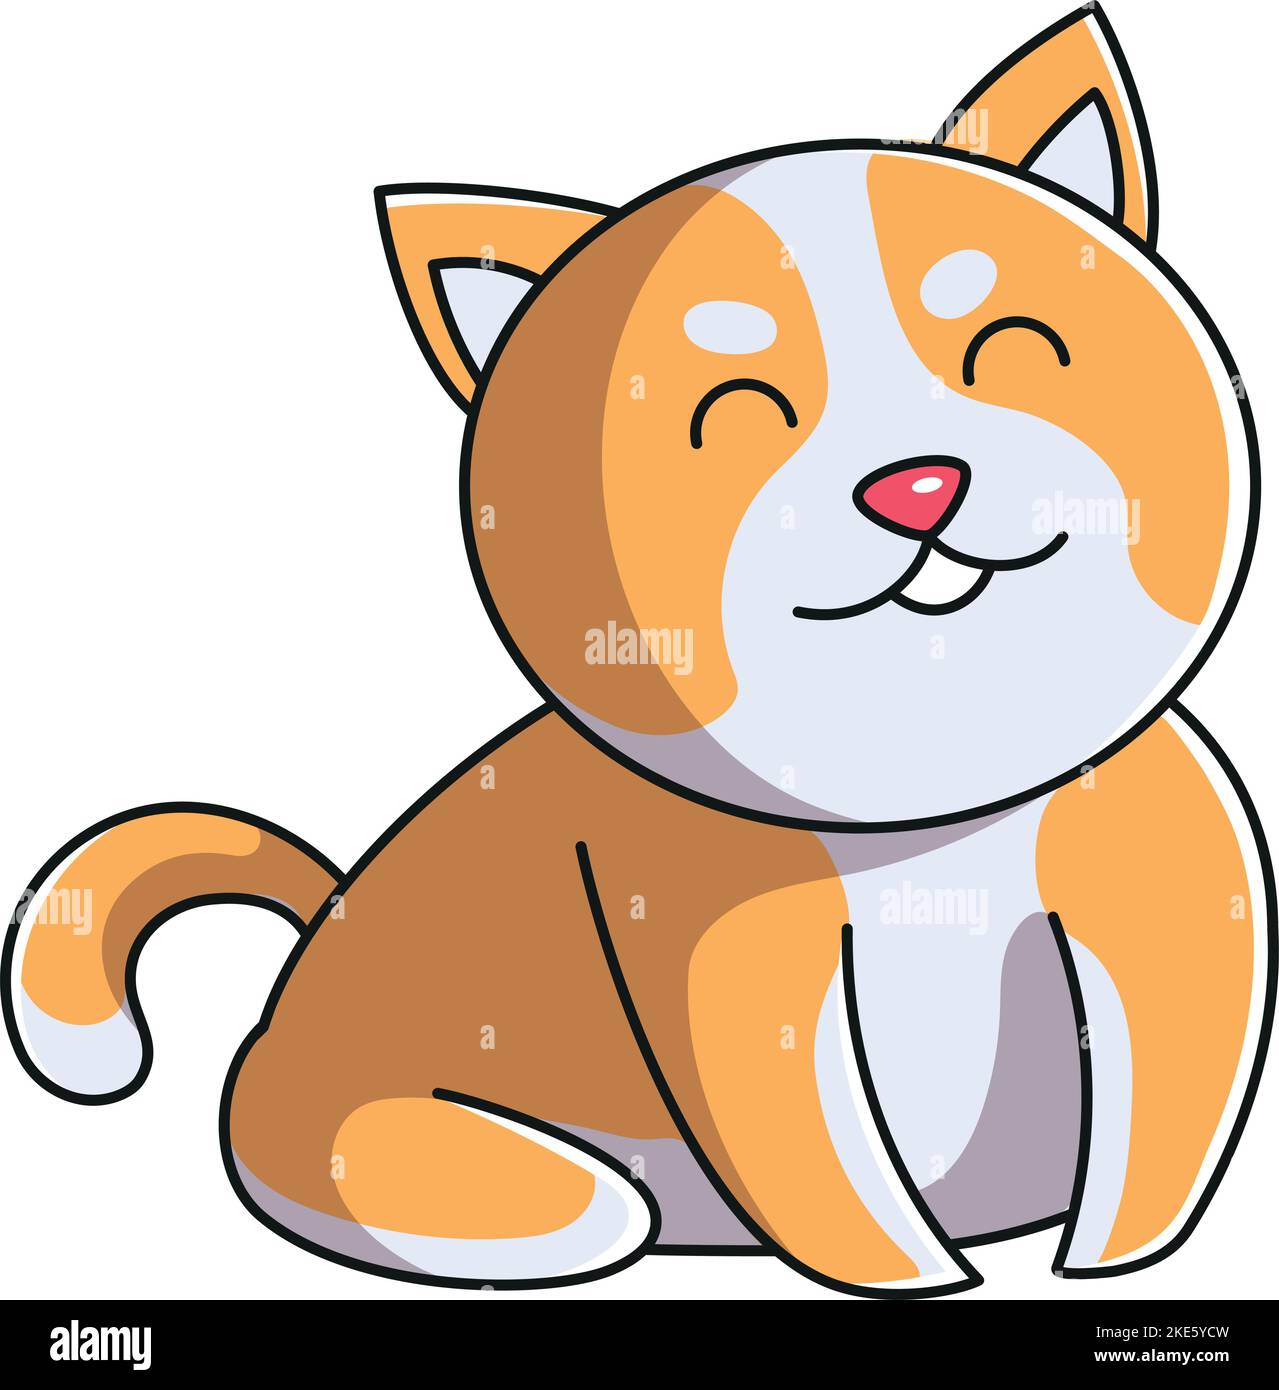 vector pixel art isolated cat girl Stock Vector Image & Art - Alamy